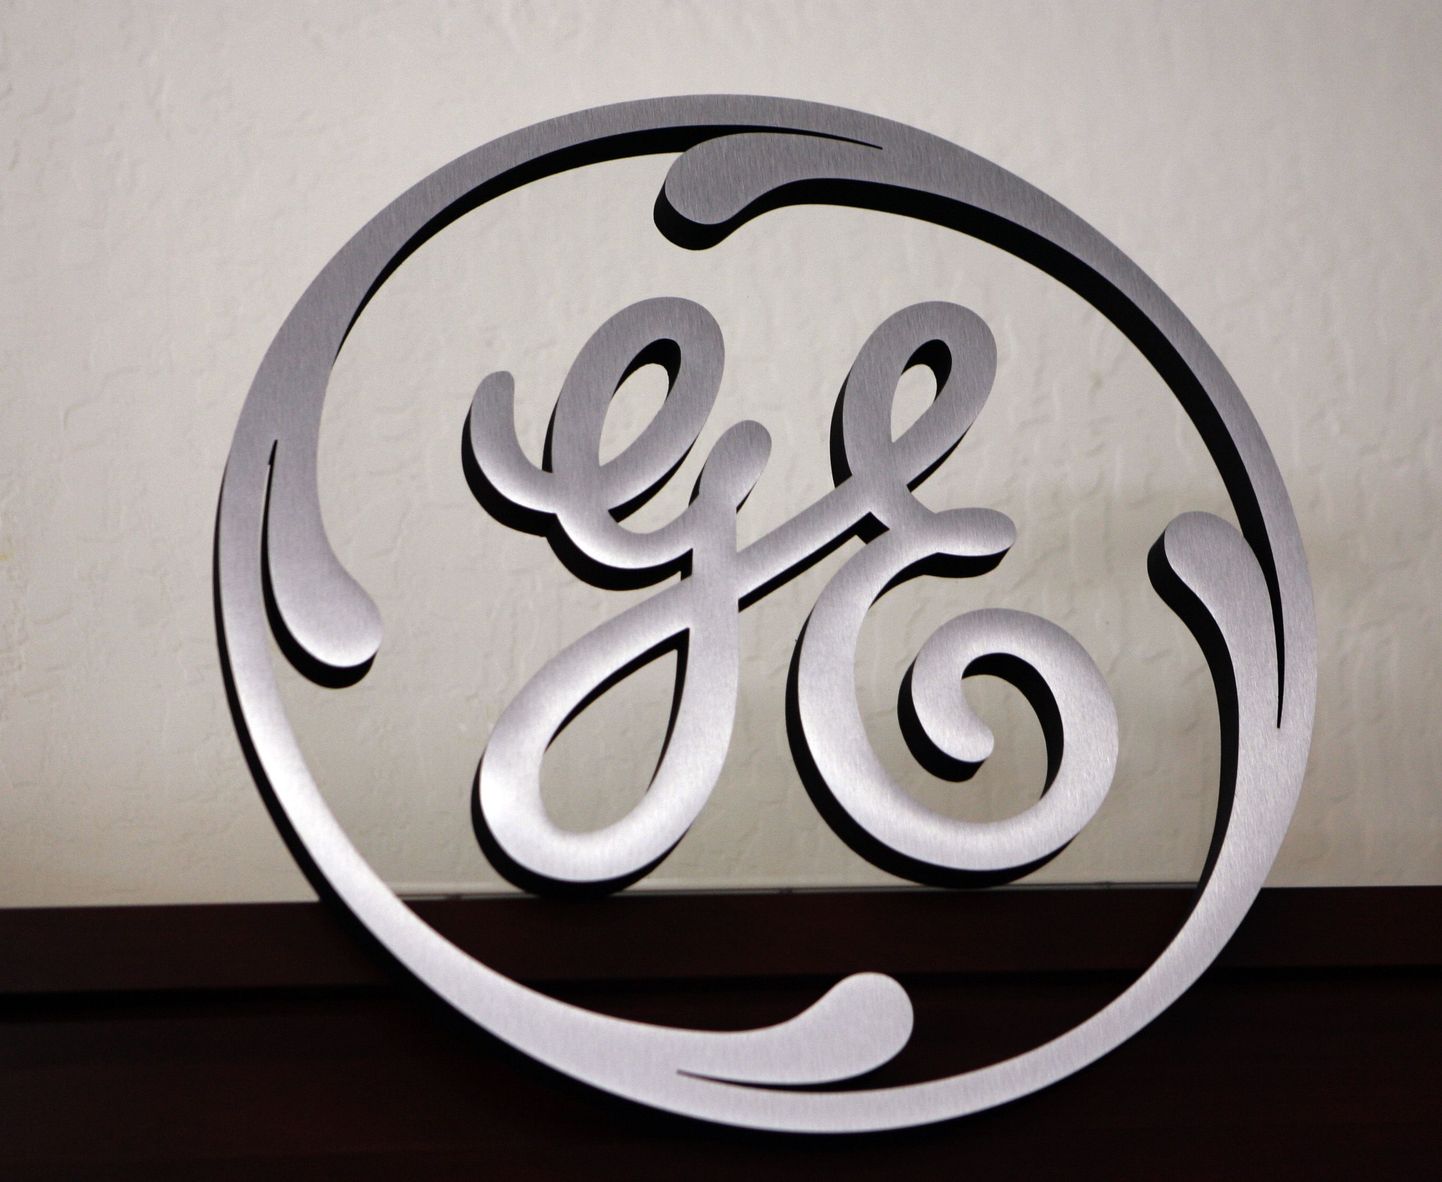 General Electricu logo.